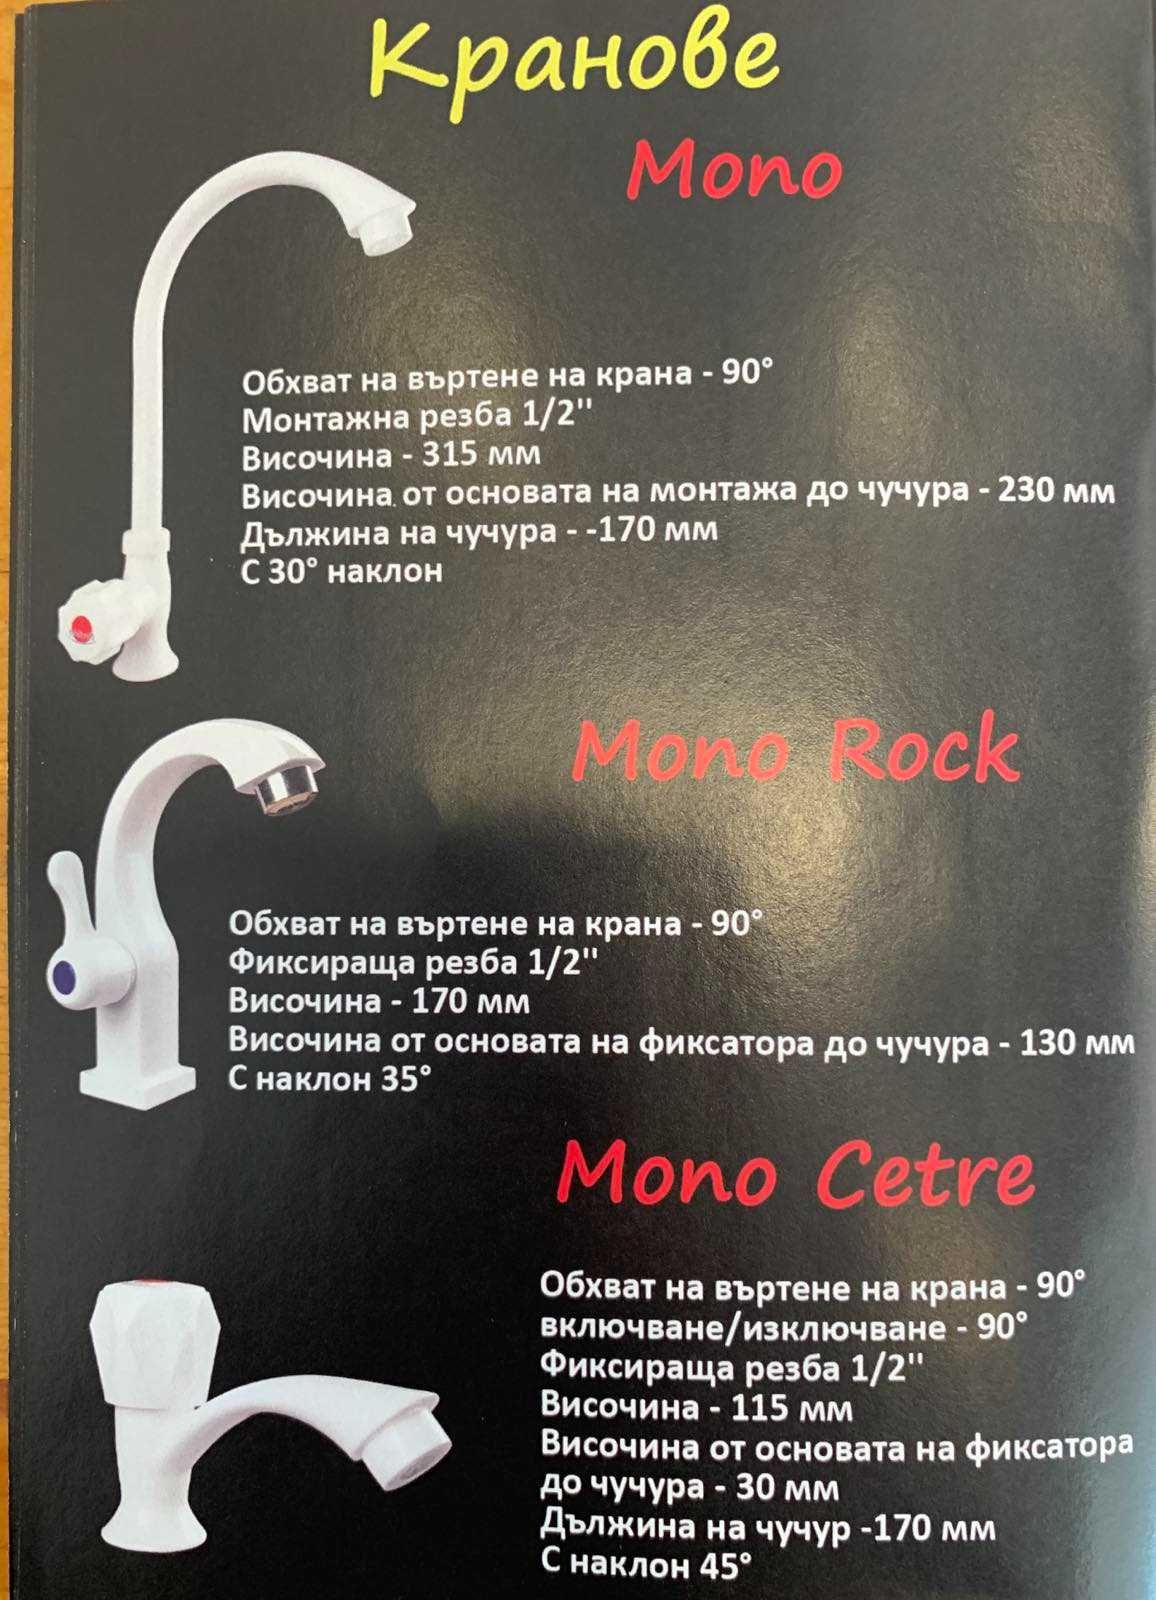 Перфектен Mono Rok кран